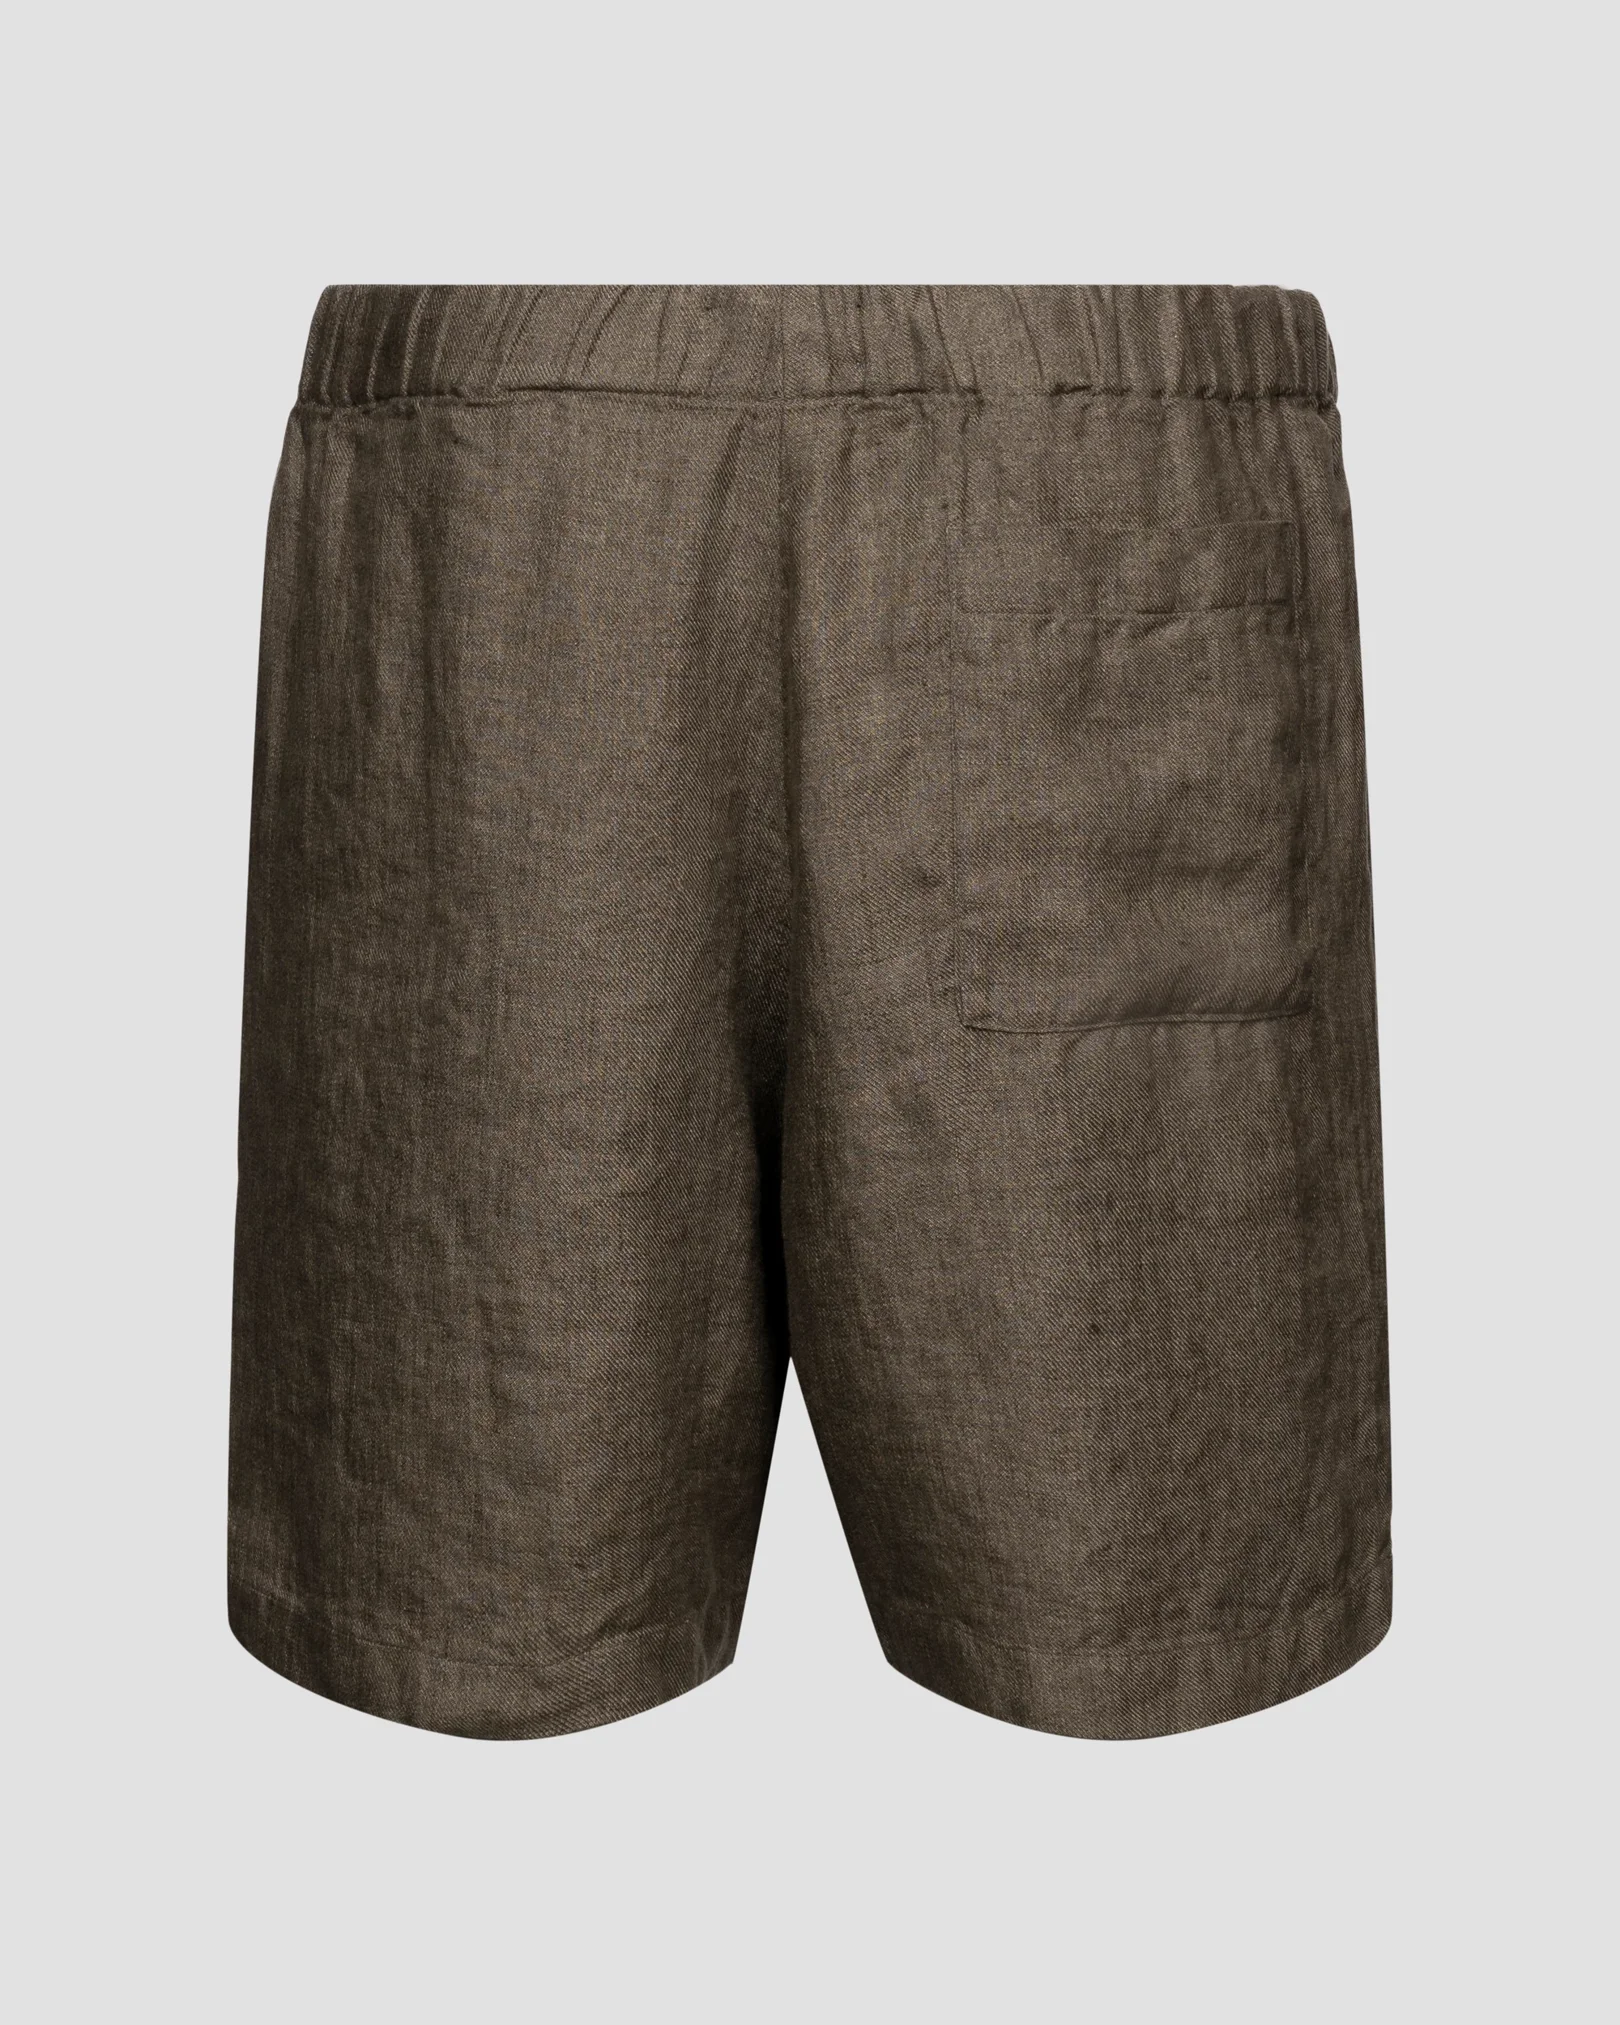 Eton - dark brown linen shorts